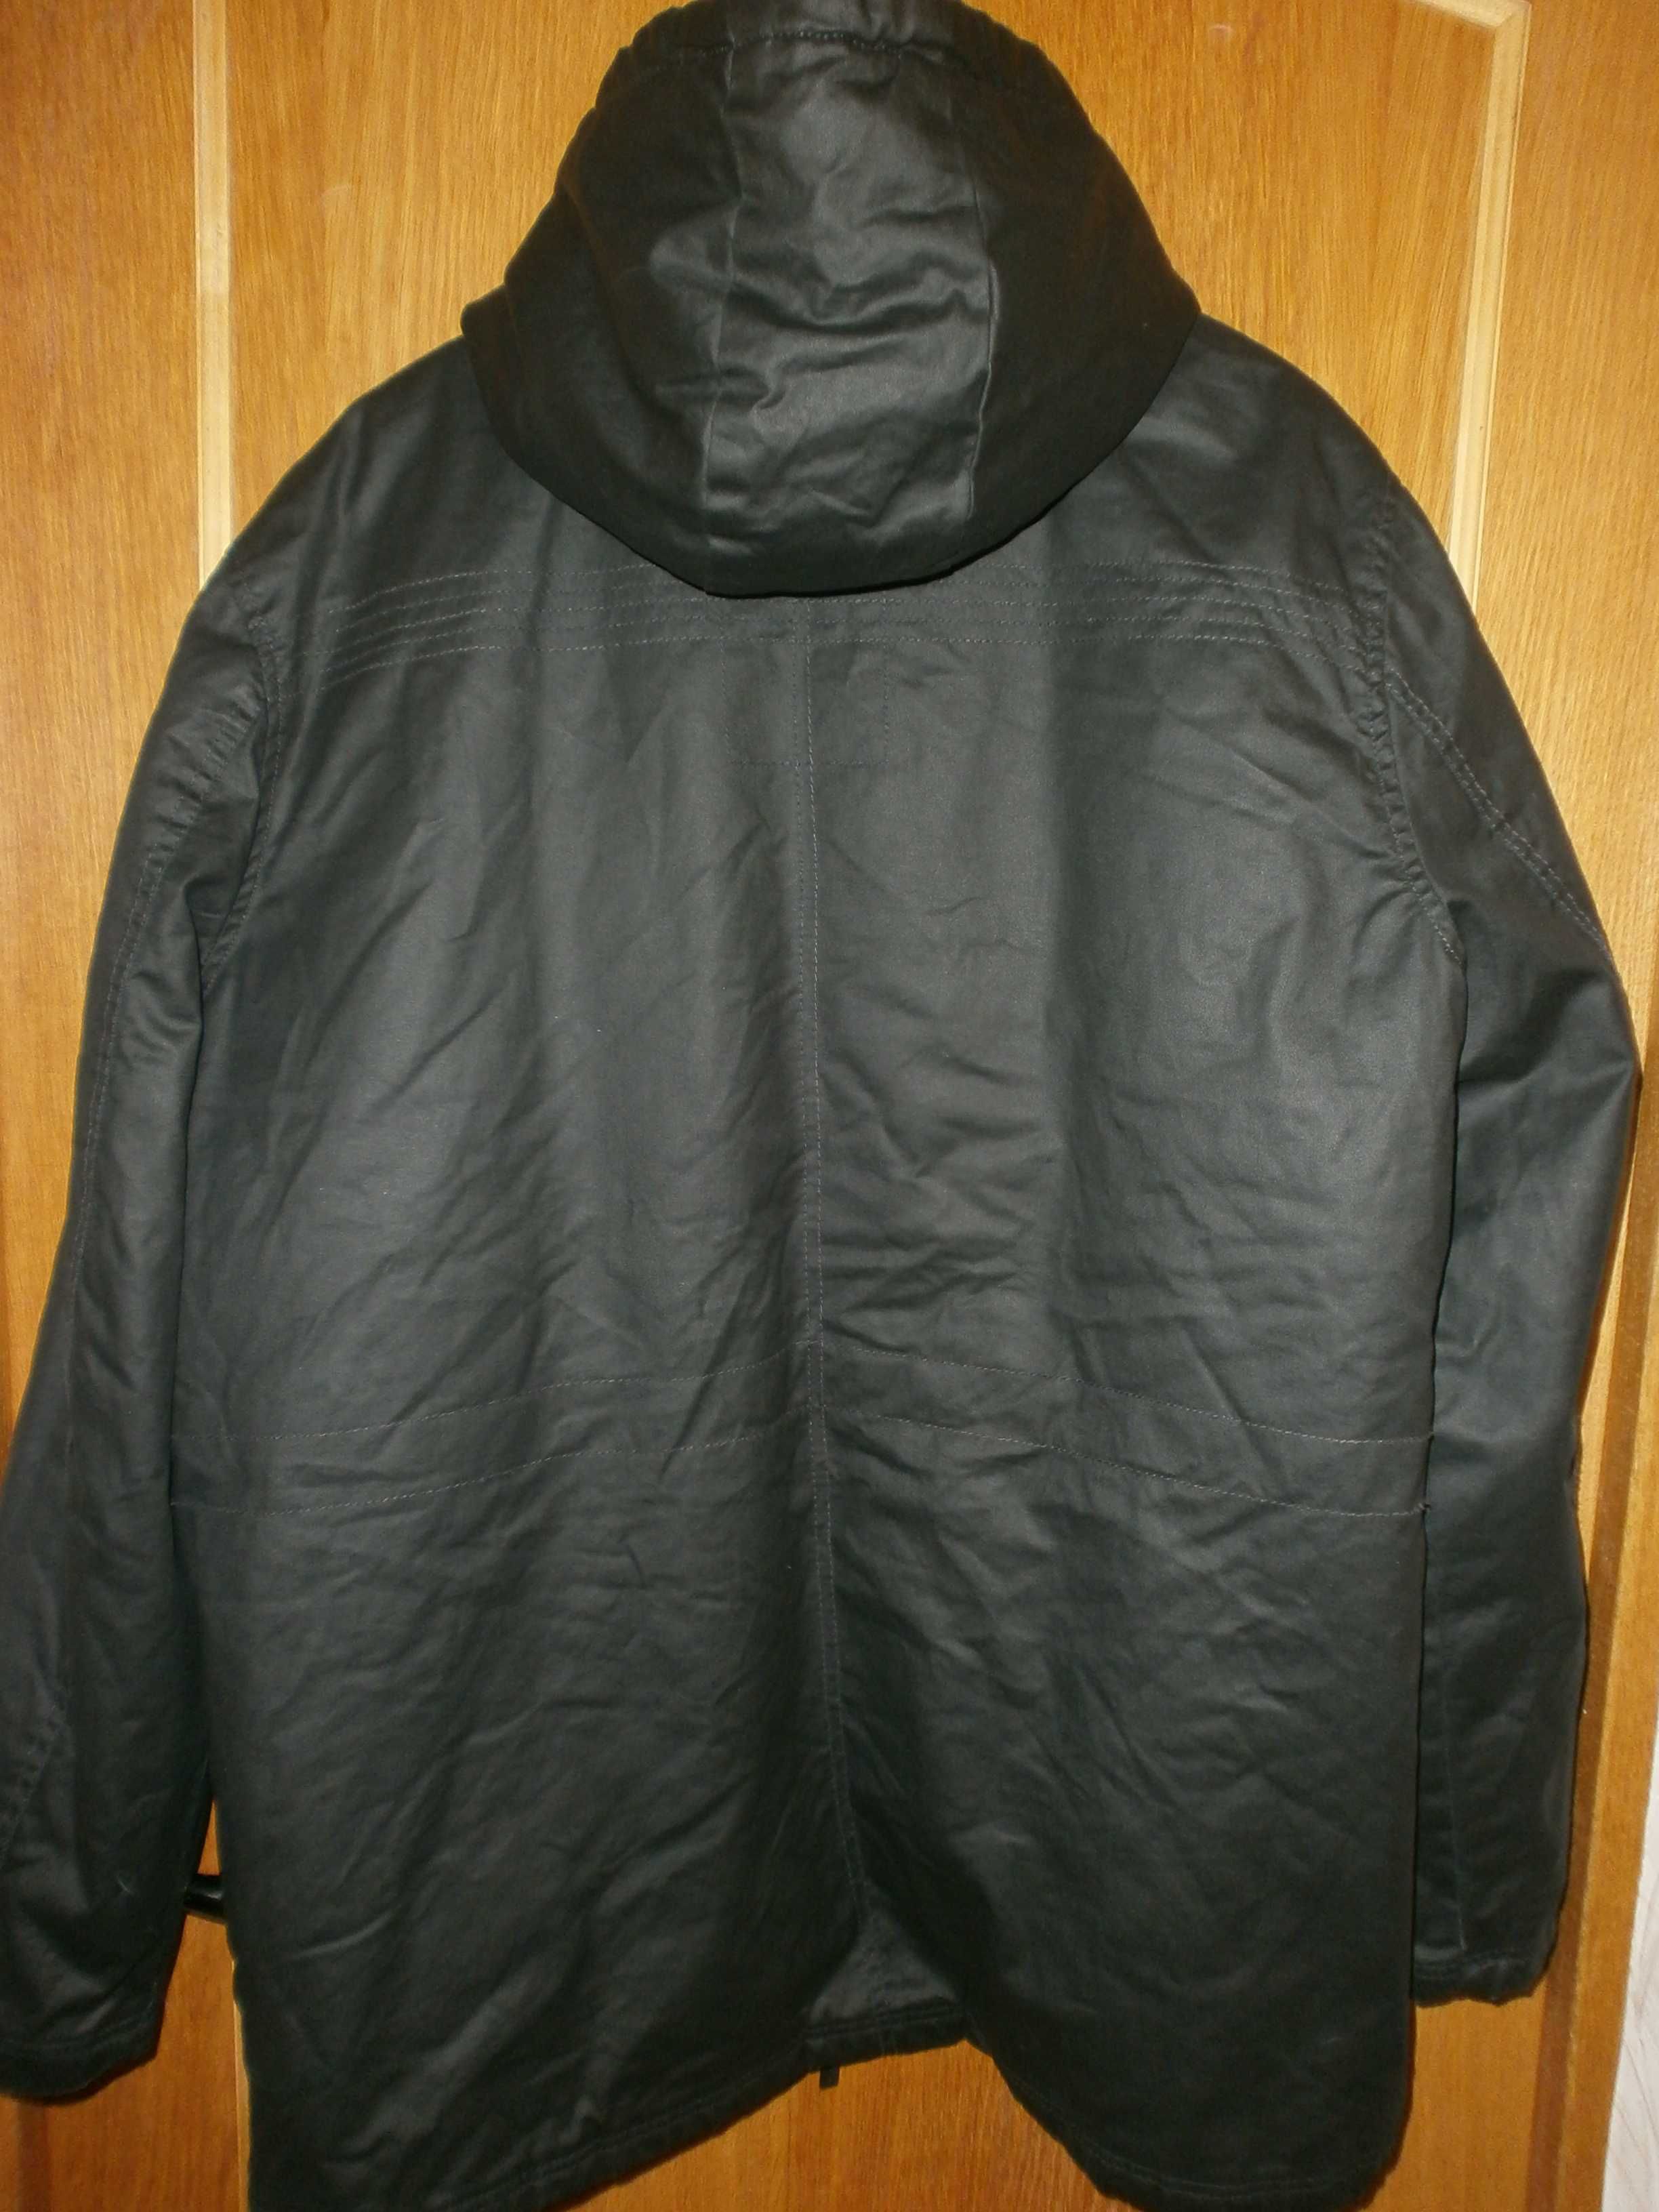 Куртка парка пропитка OWK, чёрная, разм. XXL, наш 56. ПОГ-66 см. Деми